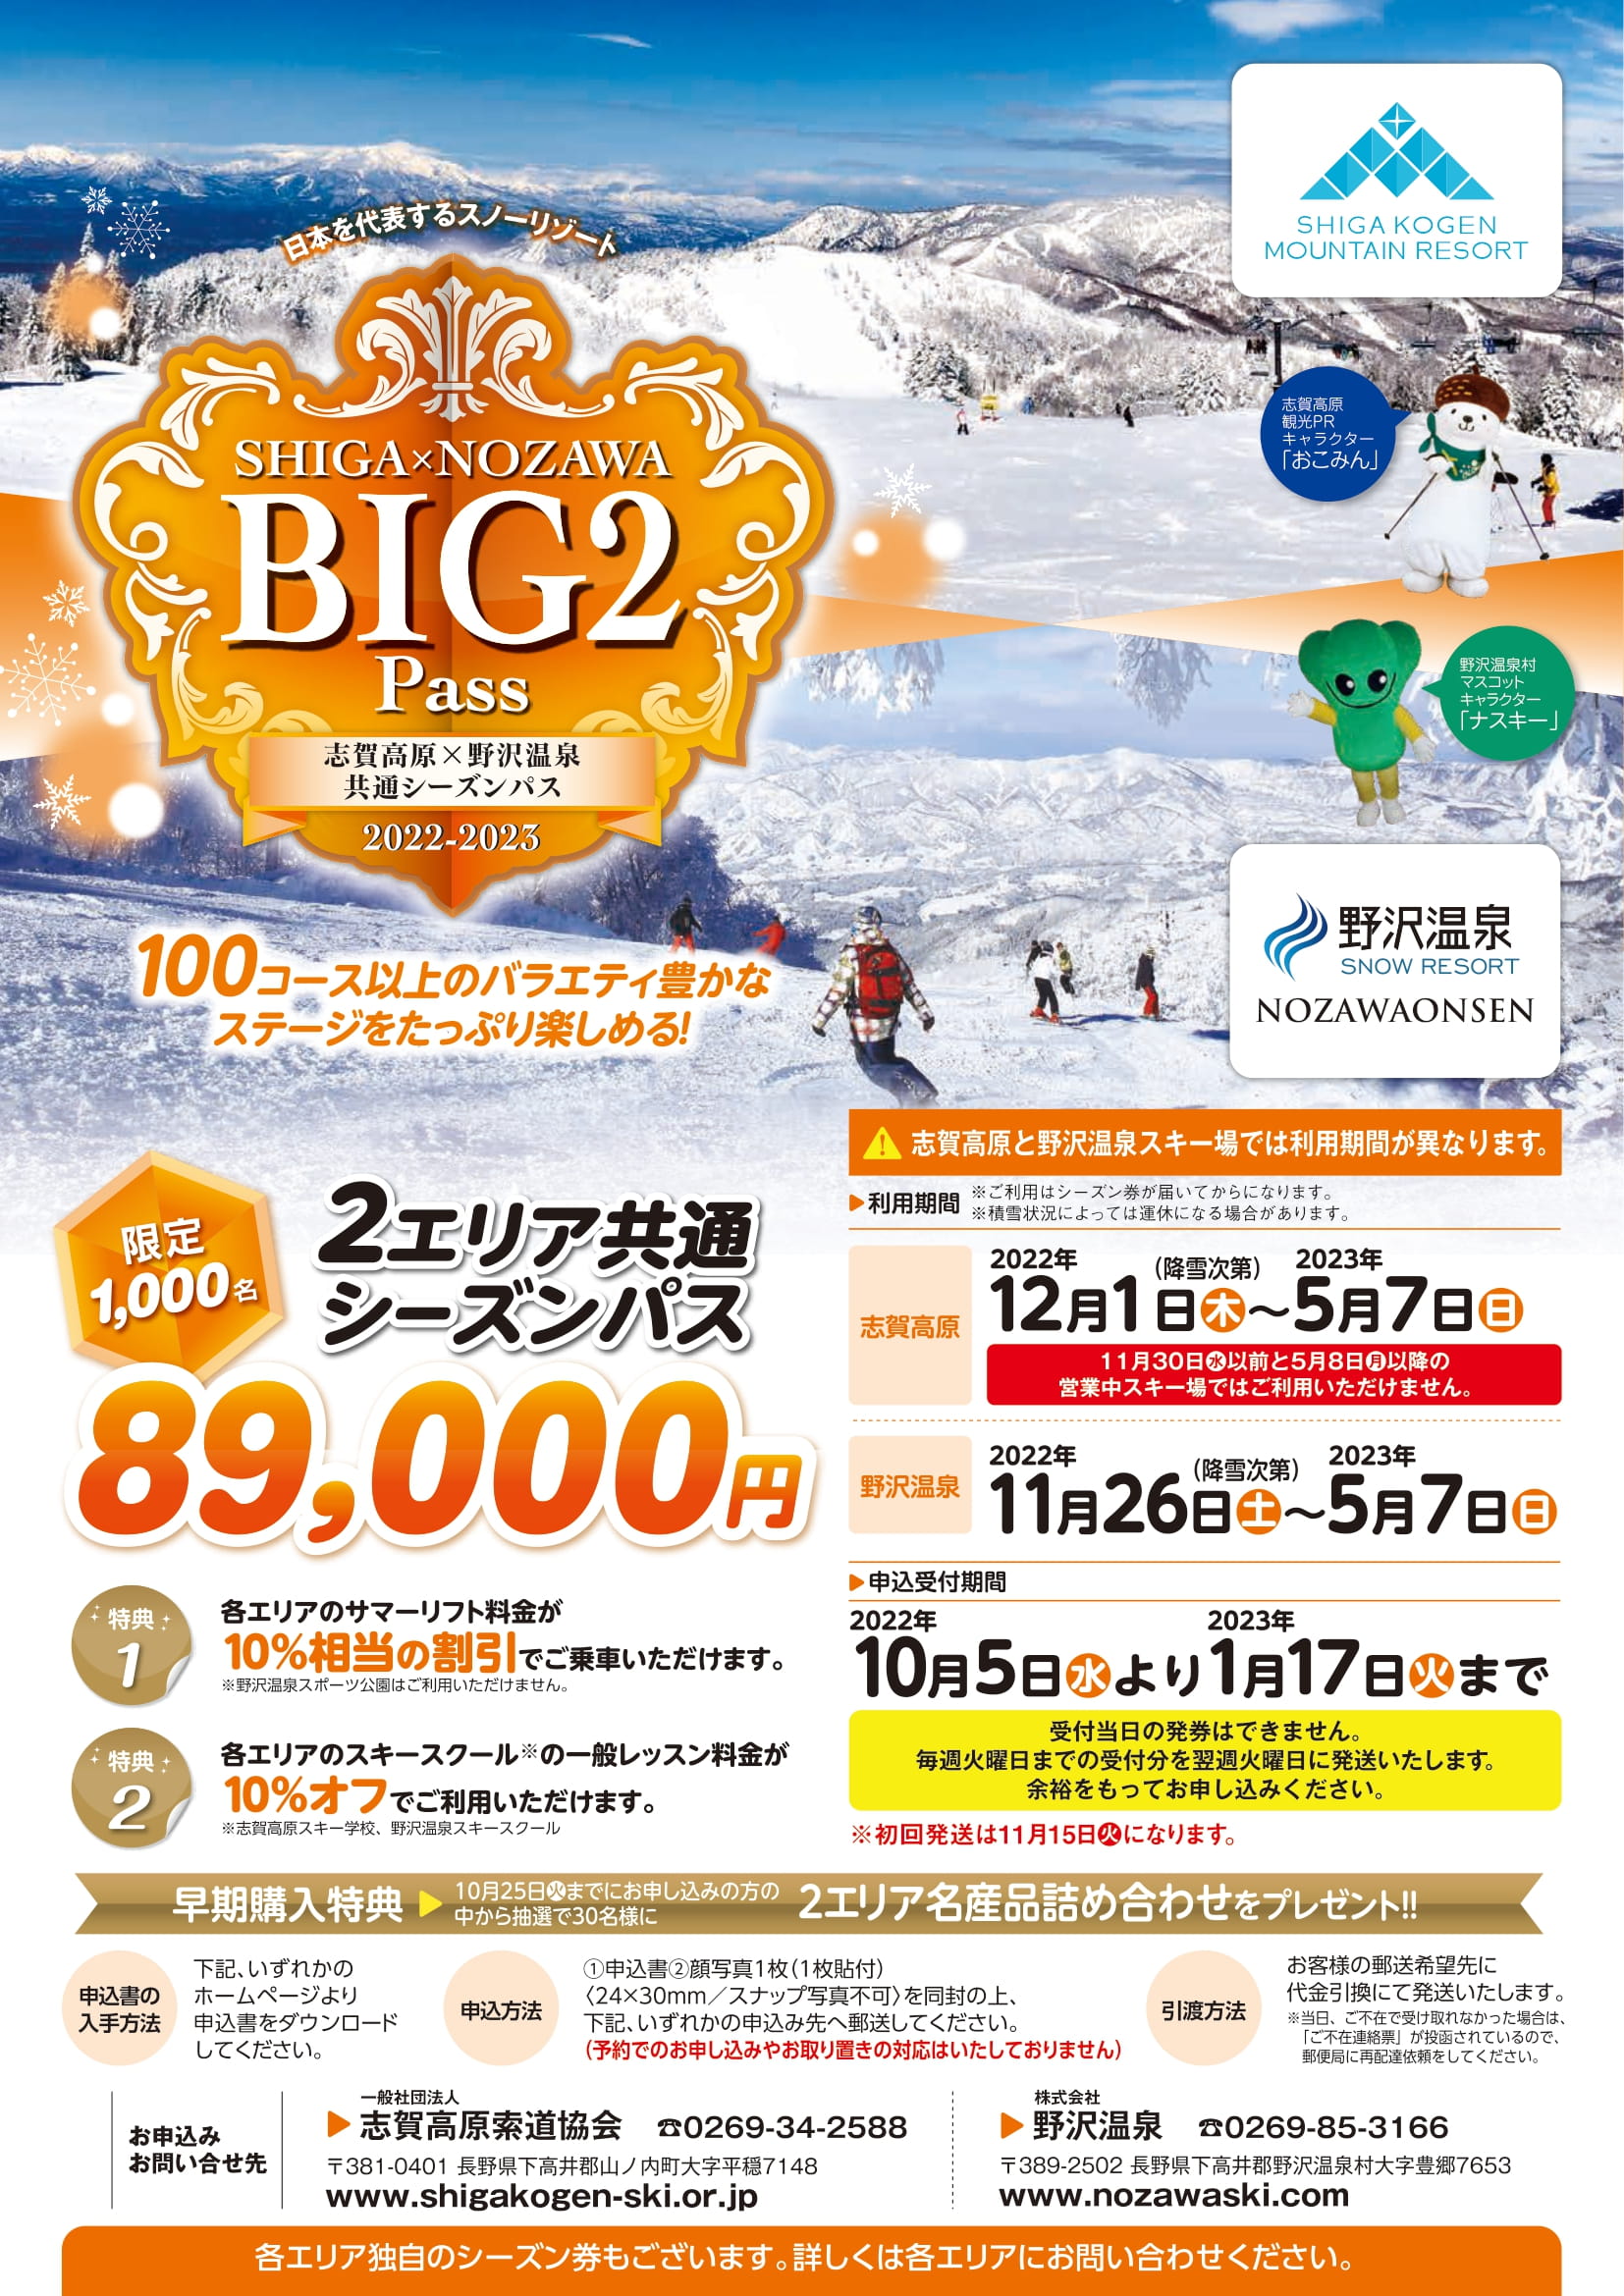 ◆SHIGA×NOZAWA BIG２PASS販売についてお知らせ10/5更新